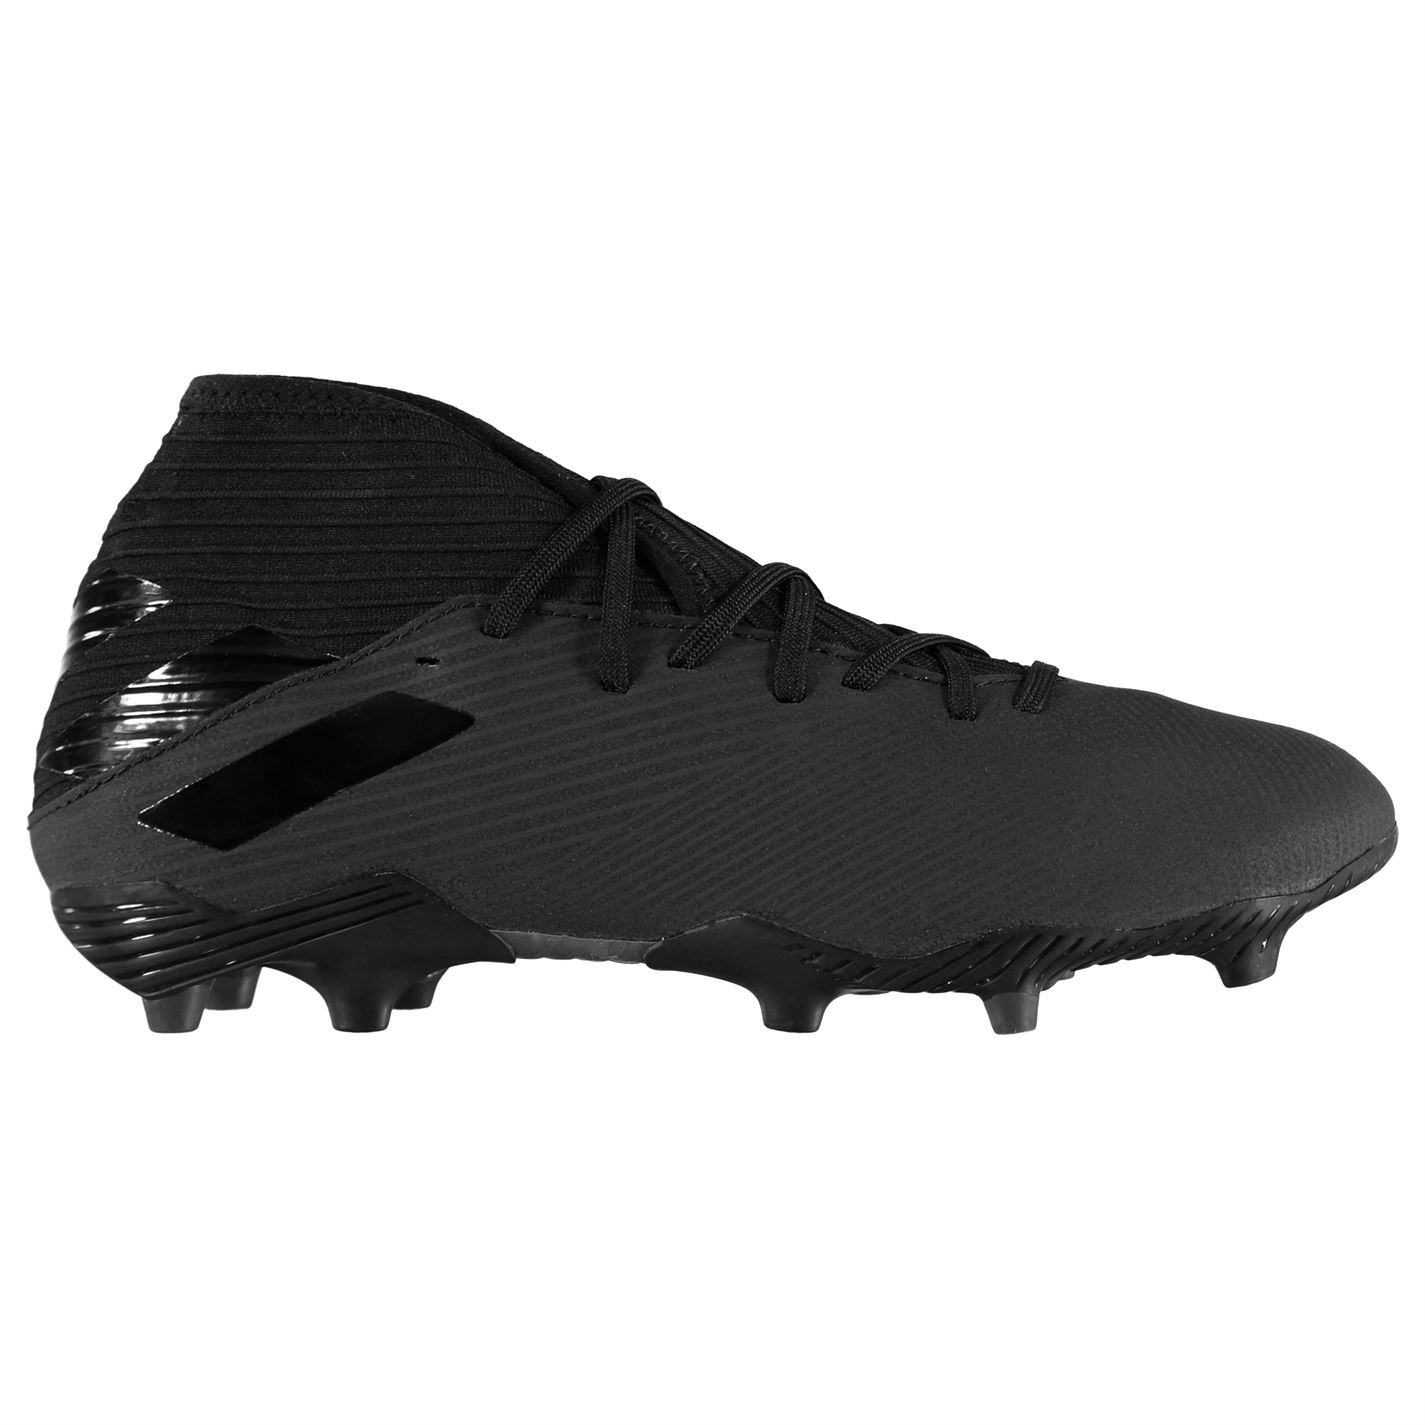 Adidas Nemeziz 19.3 FG Men’s Football Boots